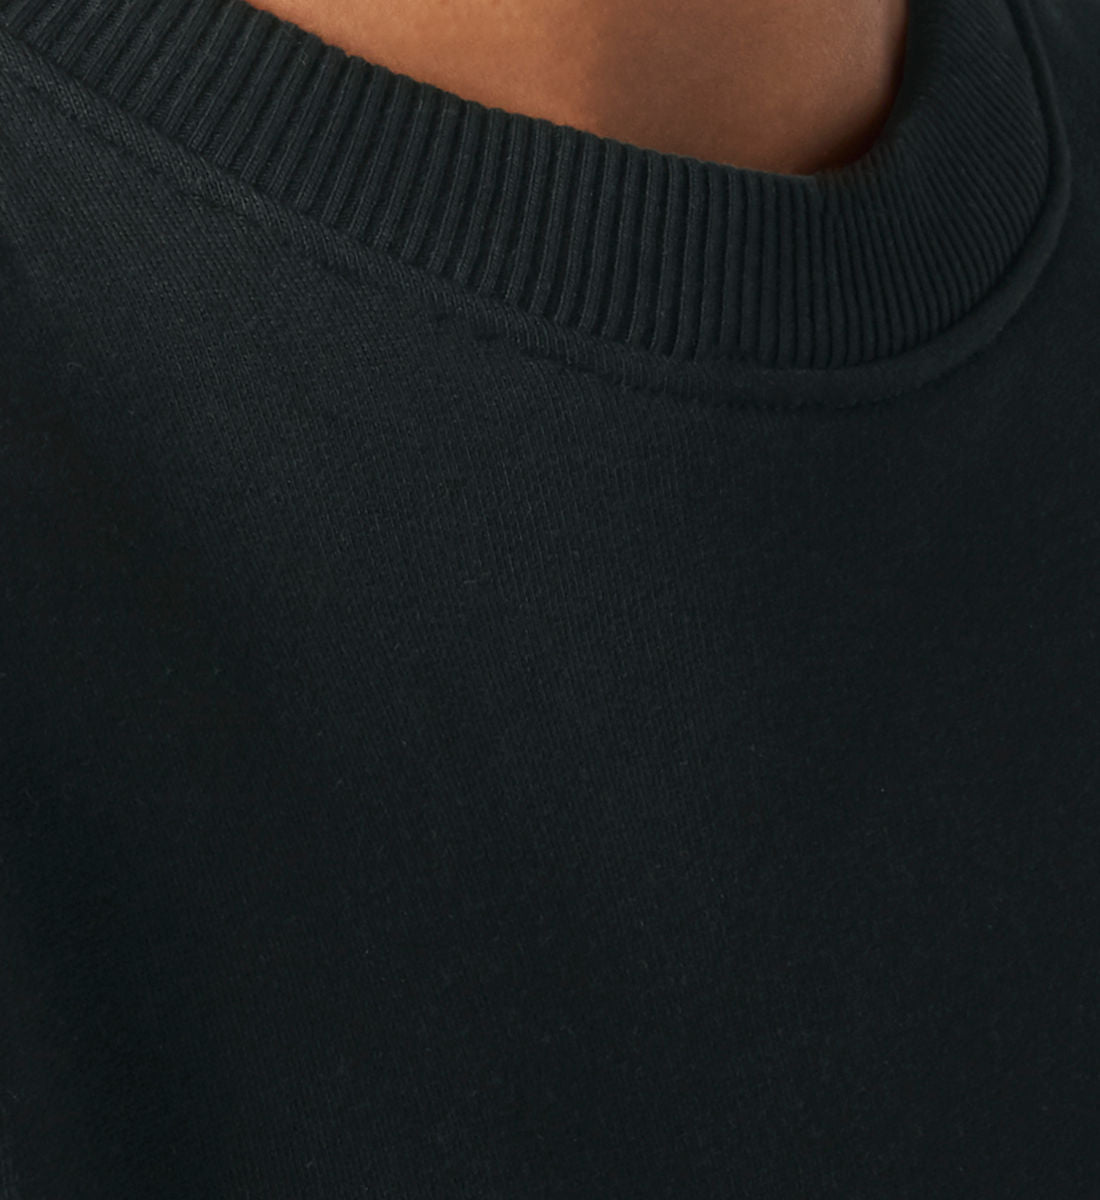 Schwarzes Sweatshirt Unisex für Frauen und Männer bedruckt mit dem Design der Roger Rockawoo Kollektion mountainbike downhill freeride shredding Culture Community